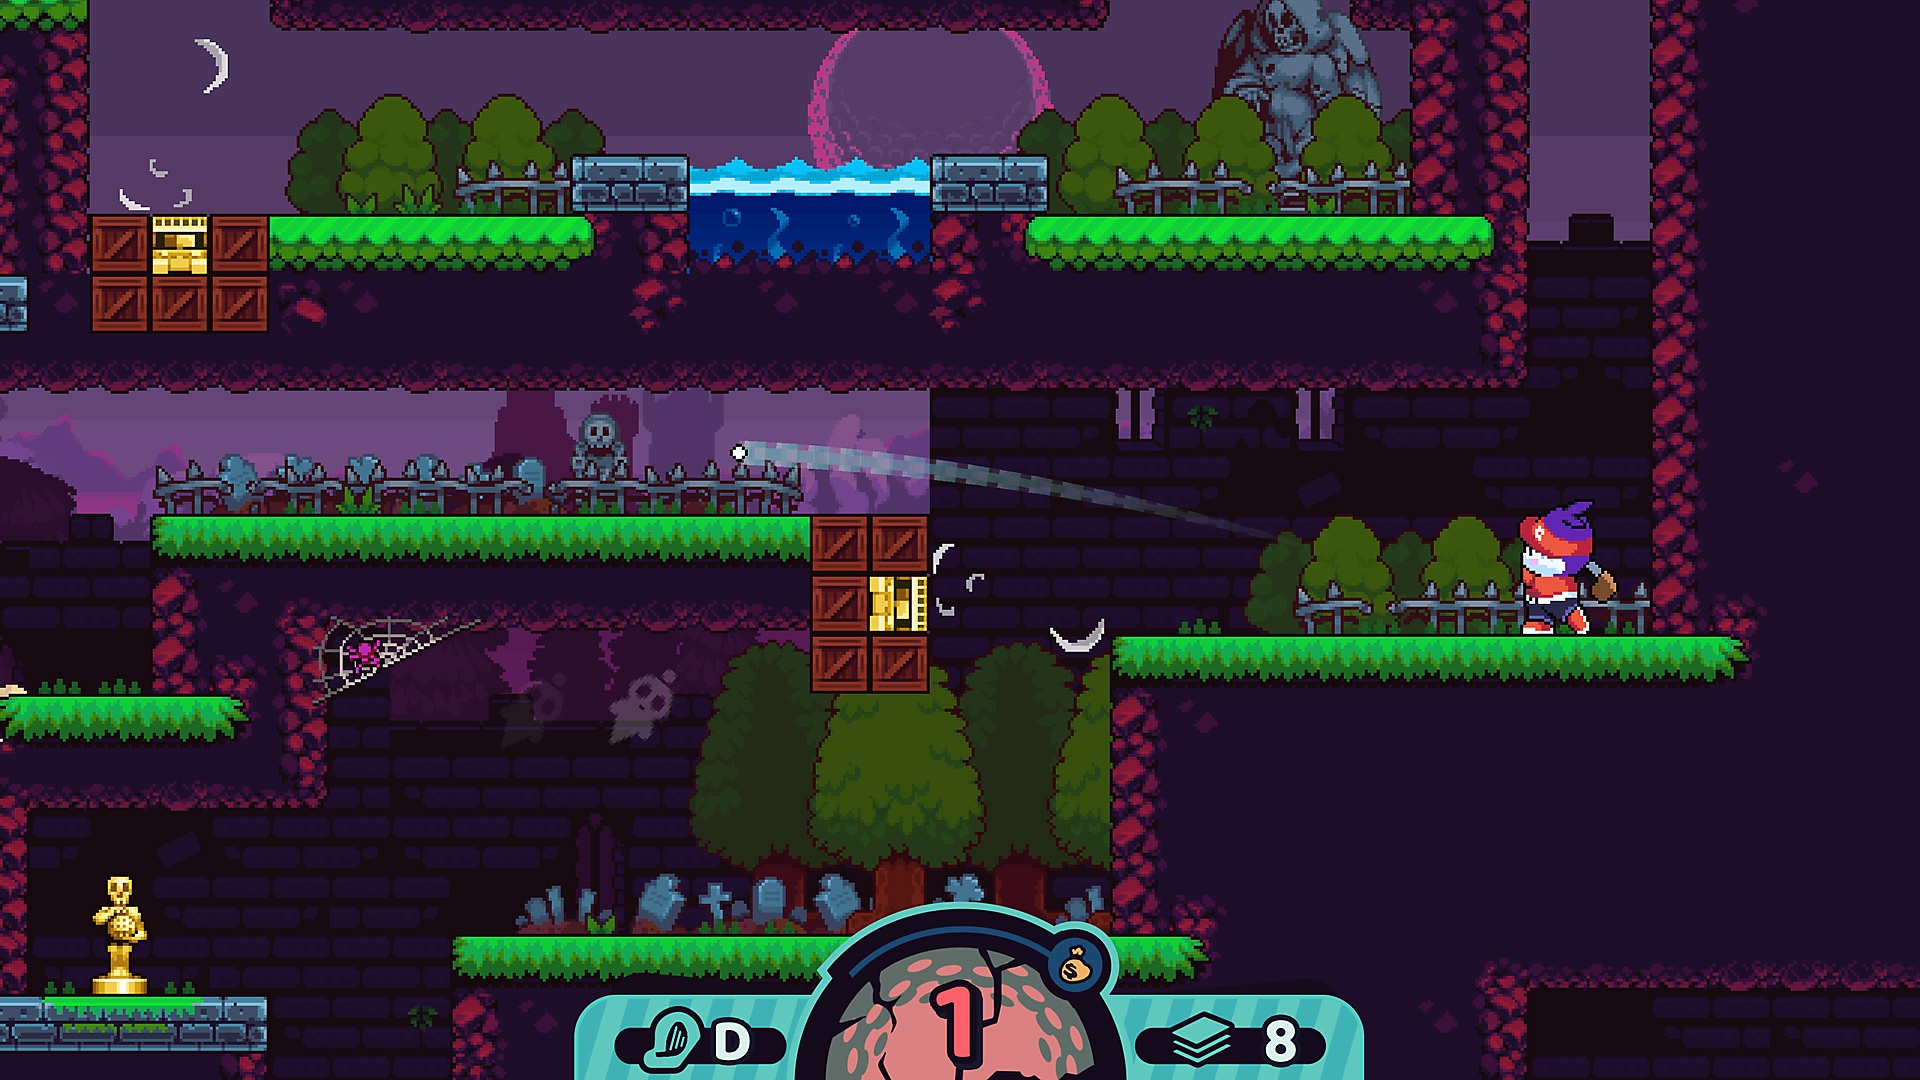 لقطة شاشة للعبة Cursed to Golf تعرض Shot Idol في الزاوية اليسرى السفلية من منطقة اللعب